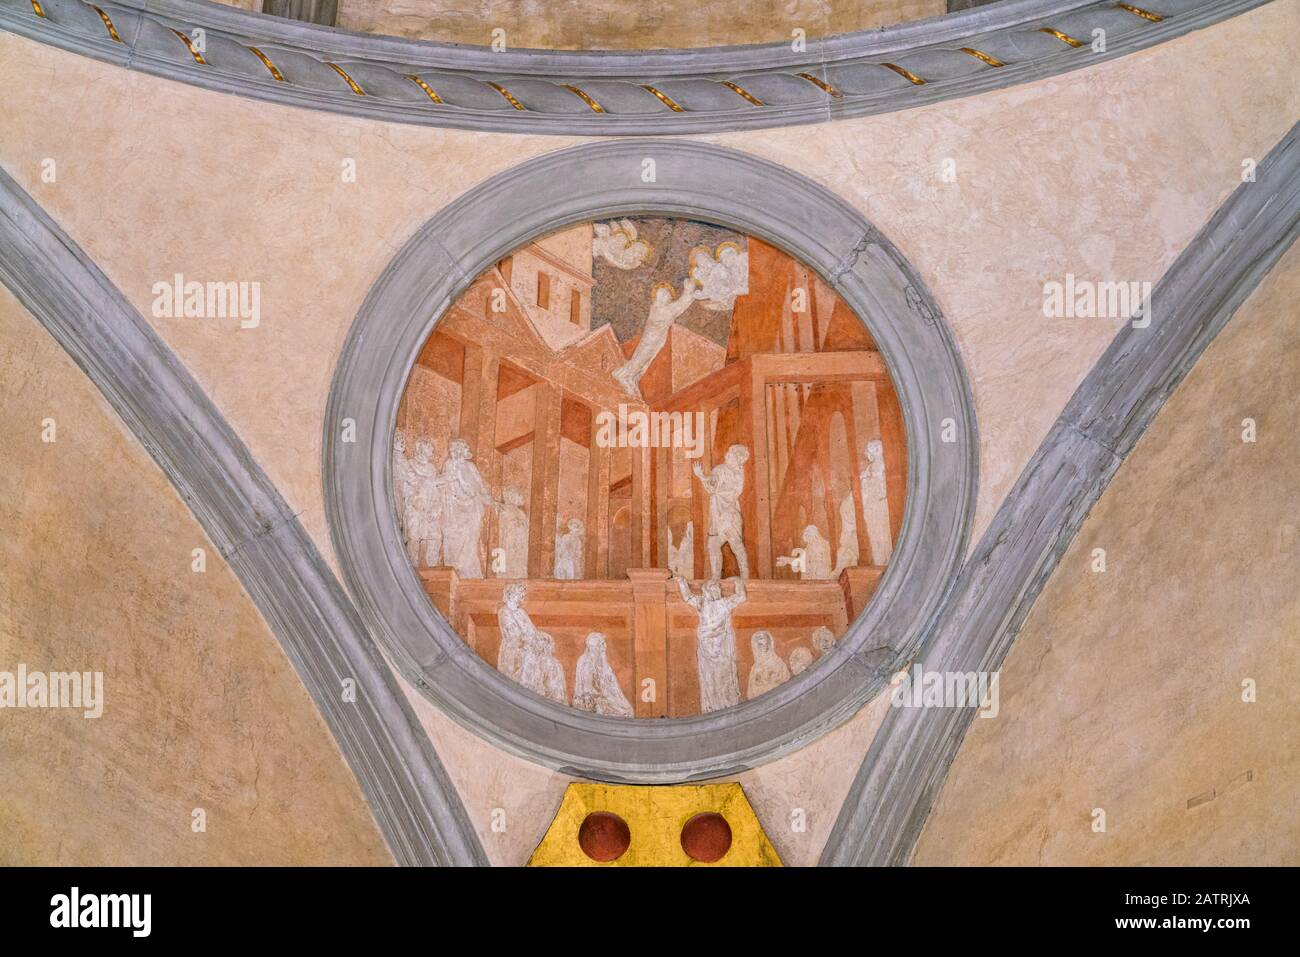 Saint John Evangelist Histoires de Donatello dans la Sagrestia Vecchia dans la basilique Saint-Laurent de Florence. Toscane, Italie. Banque D'Images